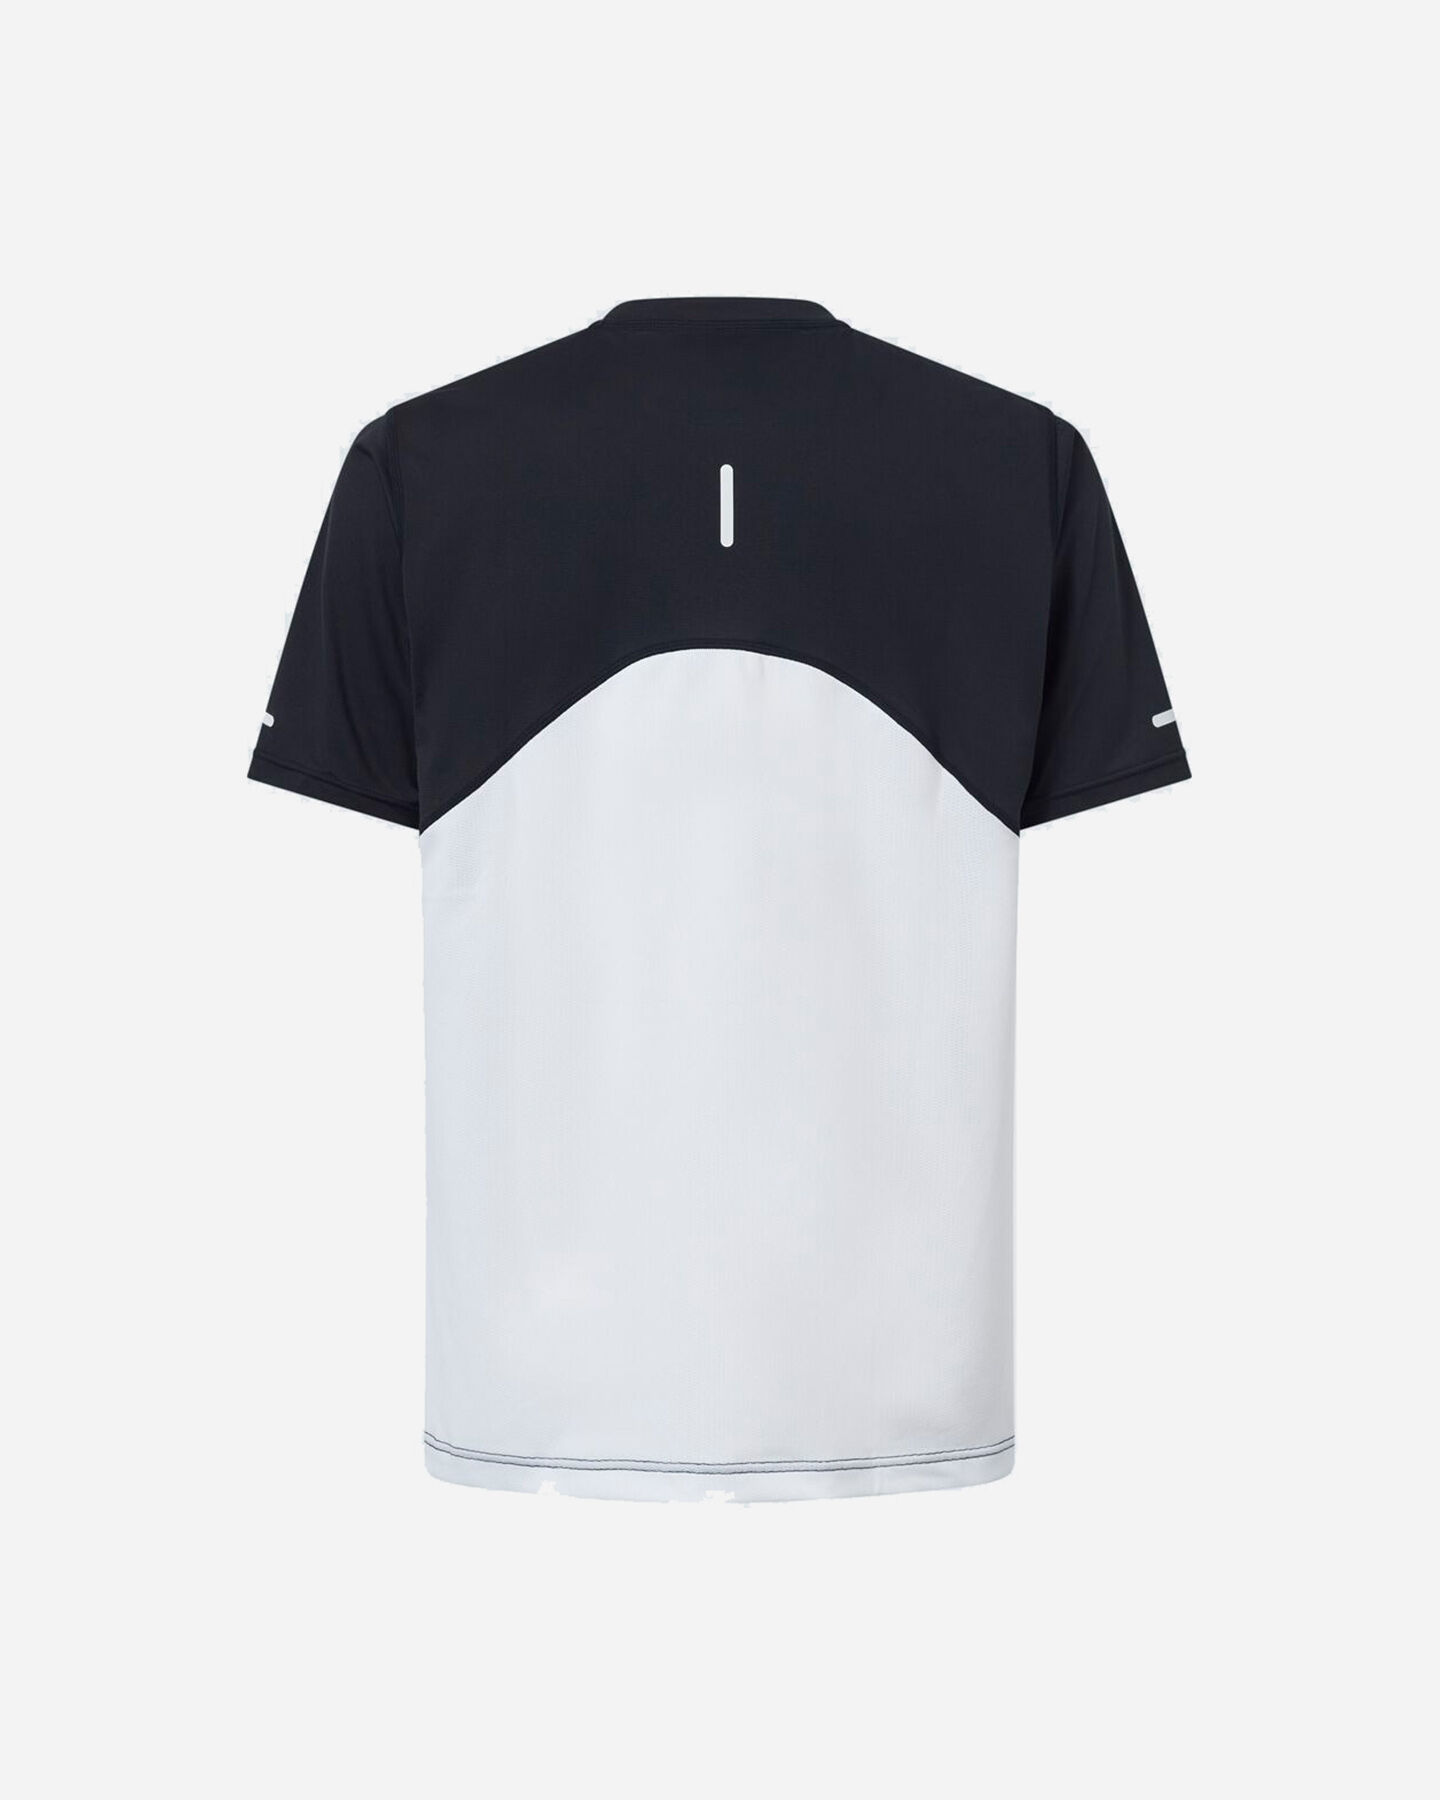  T-Shirt OAKLEY PURSUIT LITE M S5543482|02E|S scatto 1